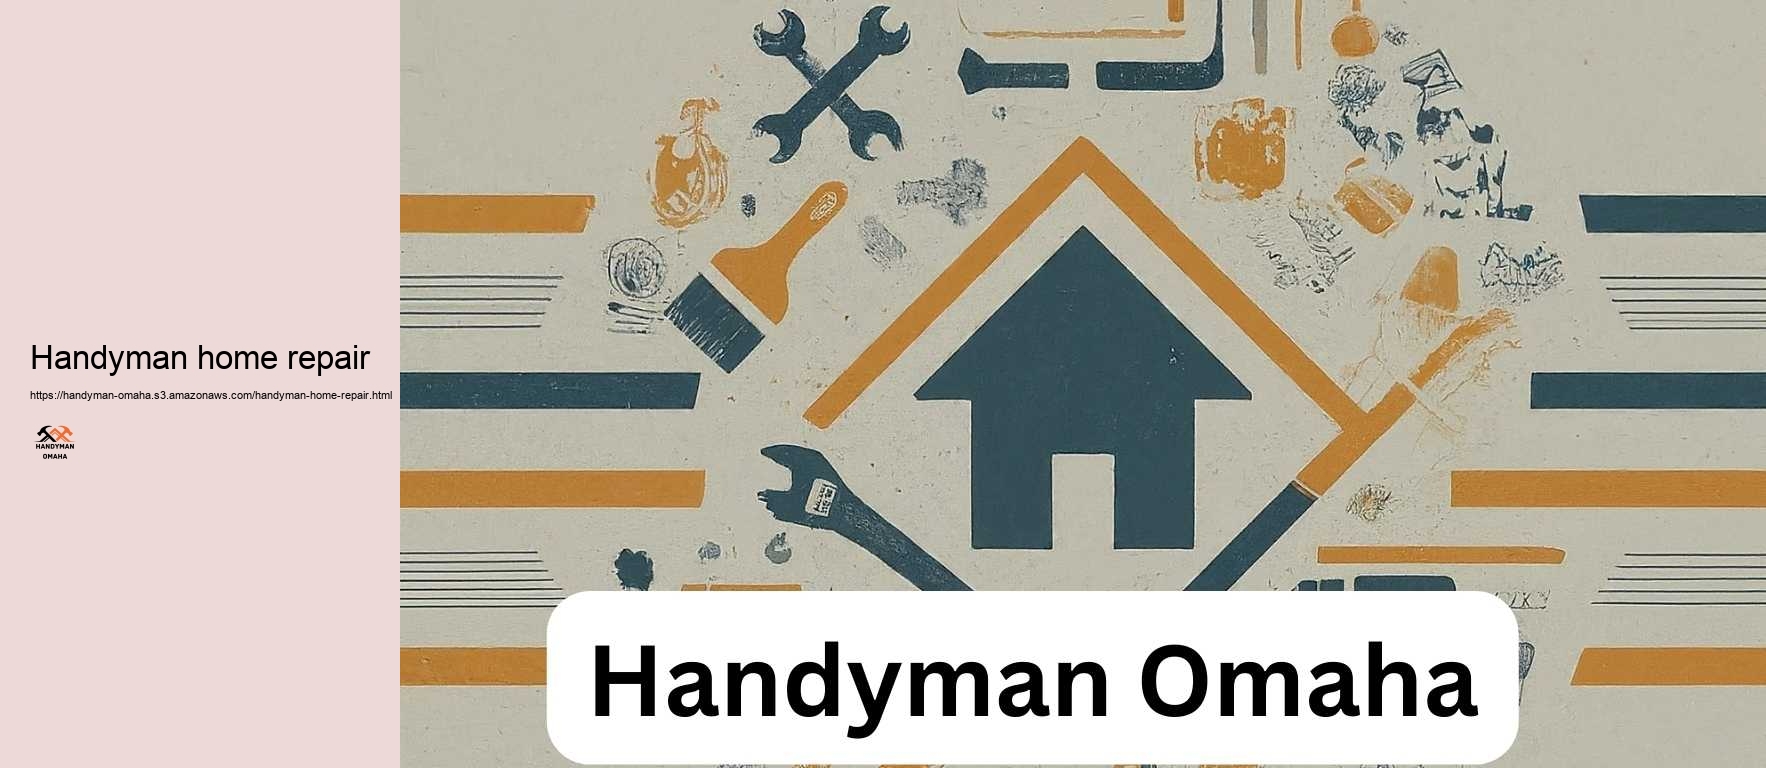 Handyman home repair